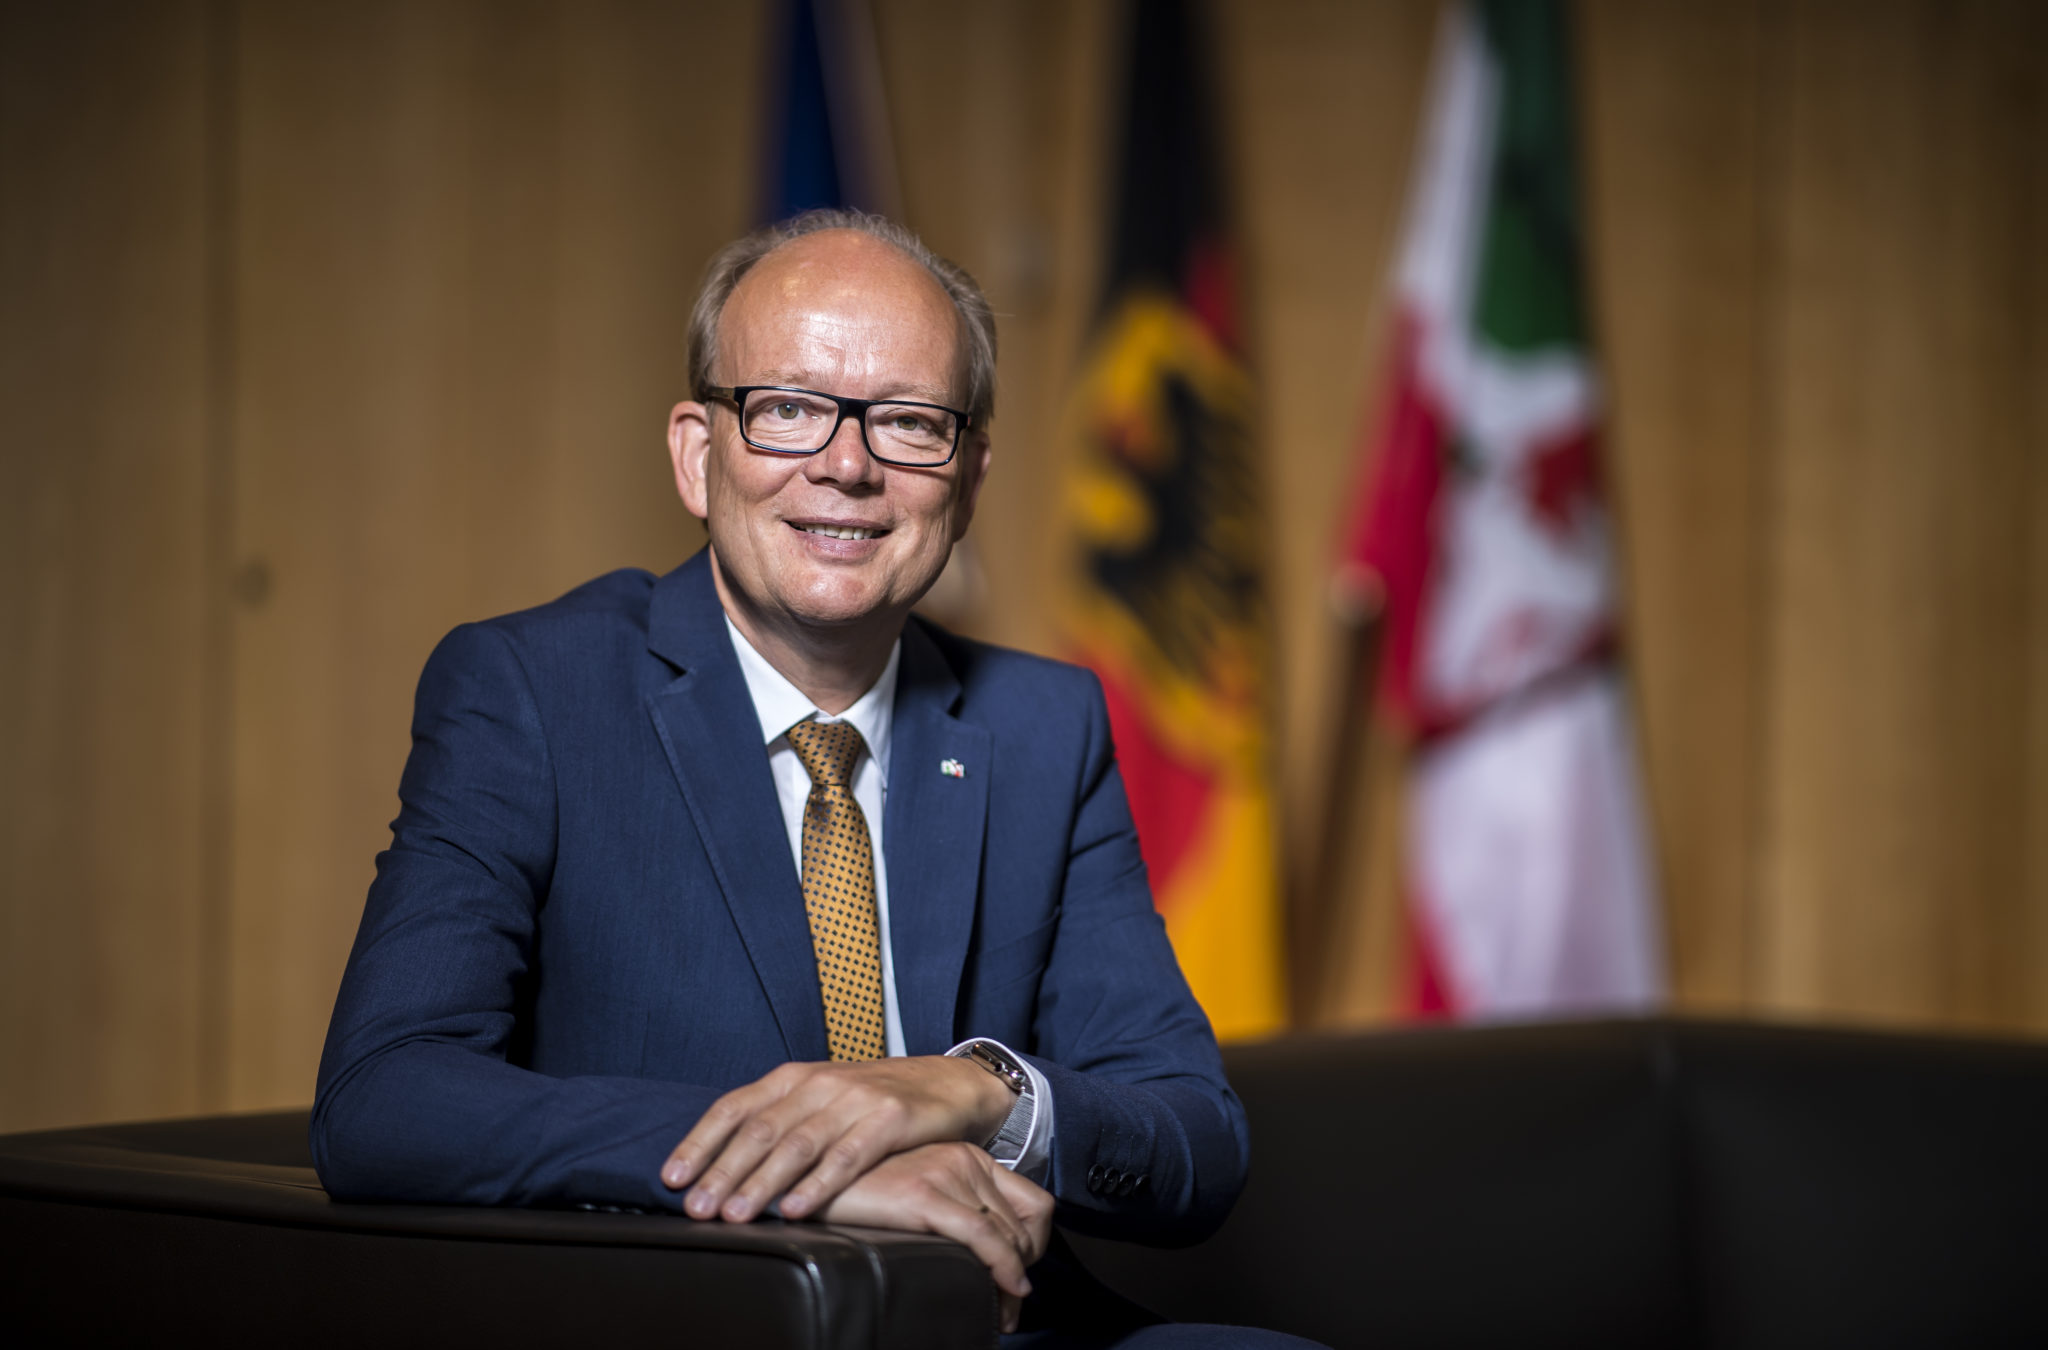 André Kuper als NRW-Landtagspräsident wiedergewählt